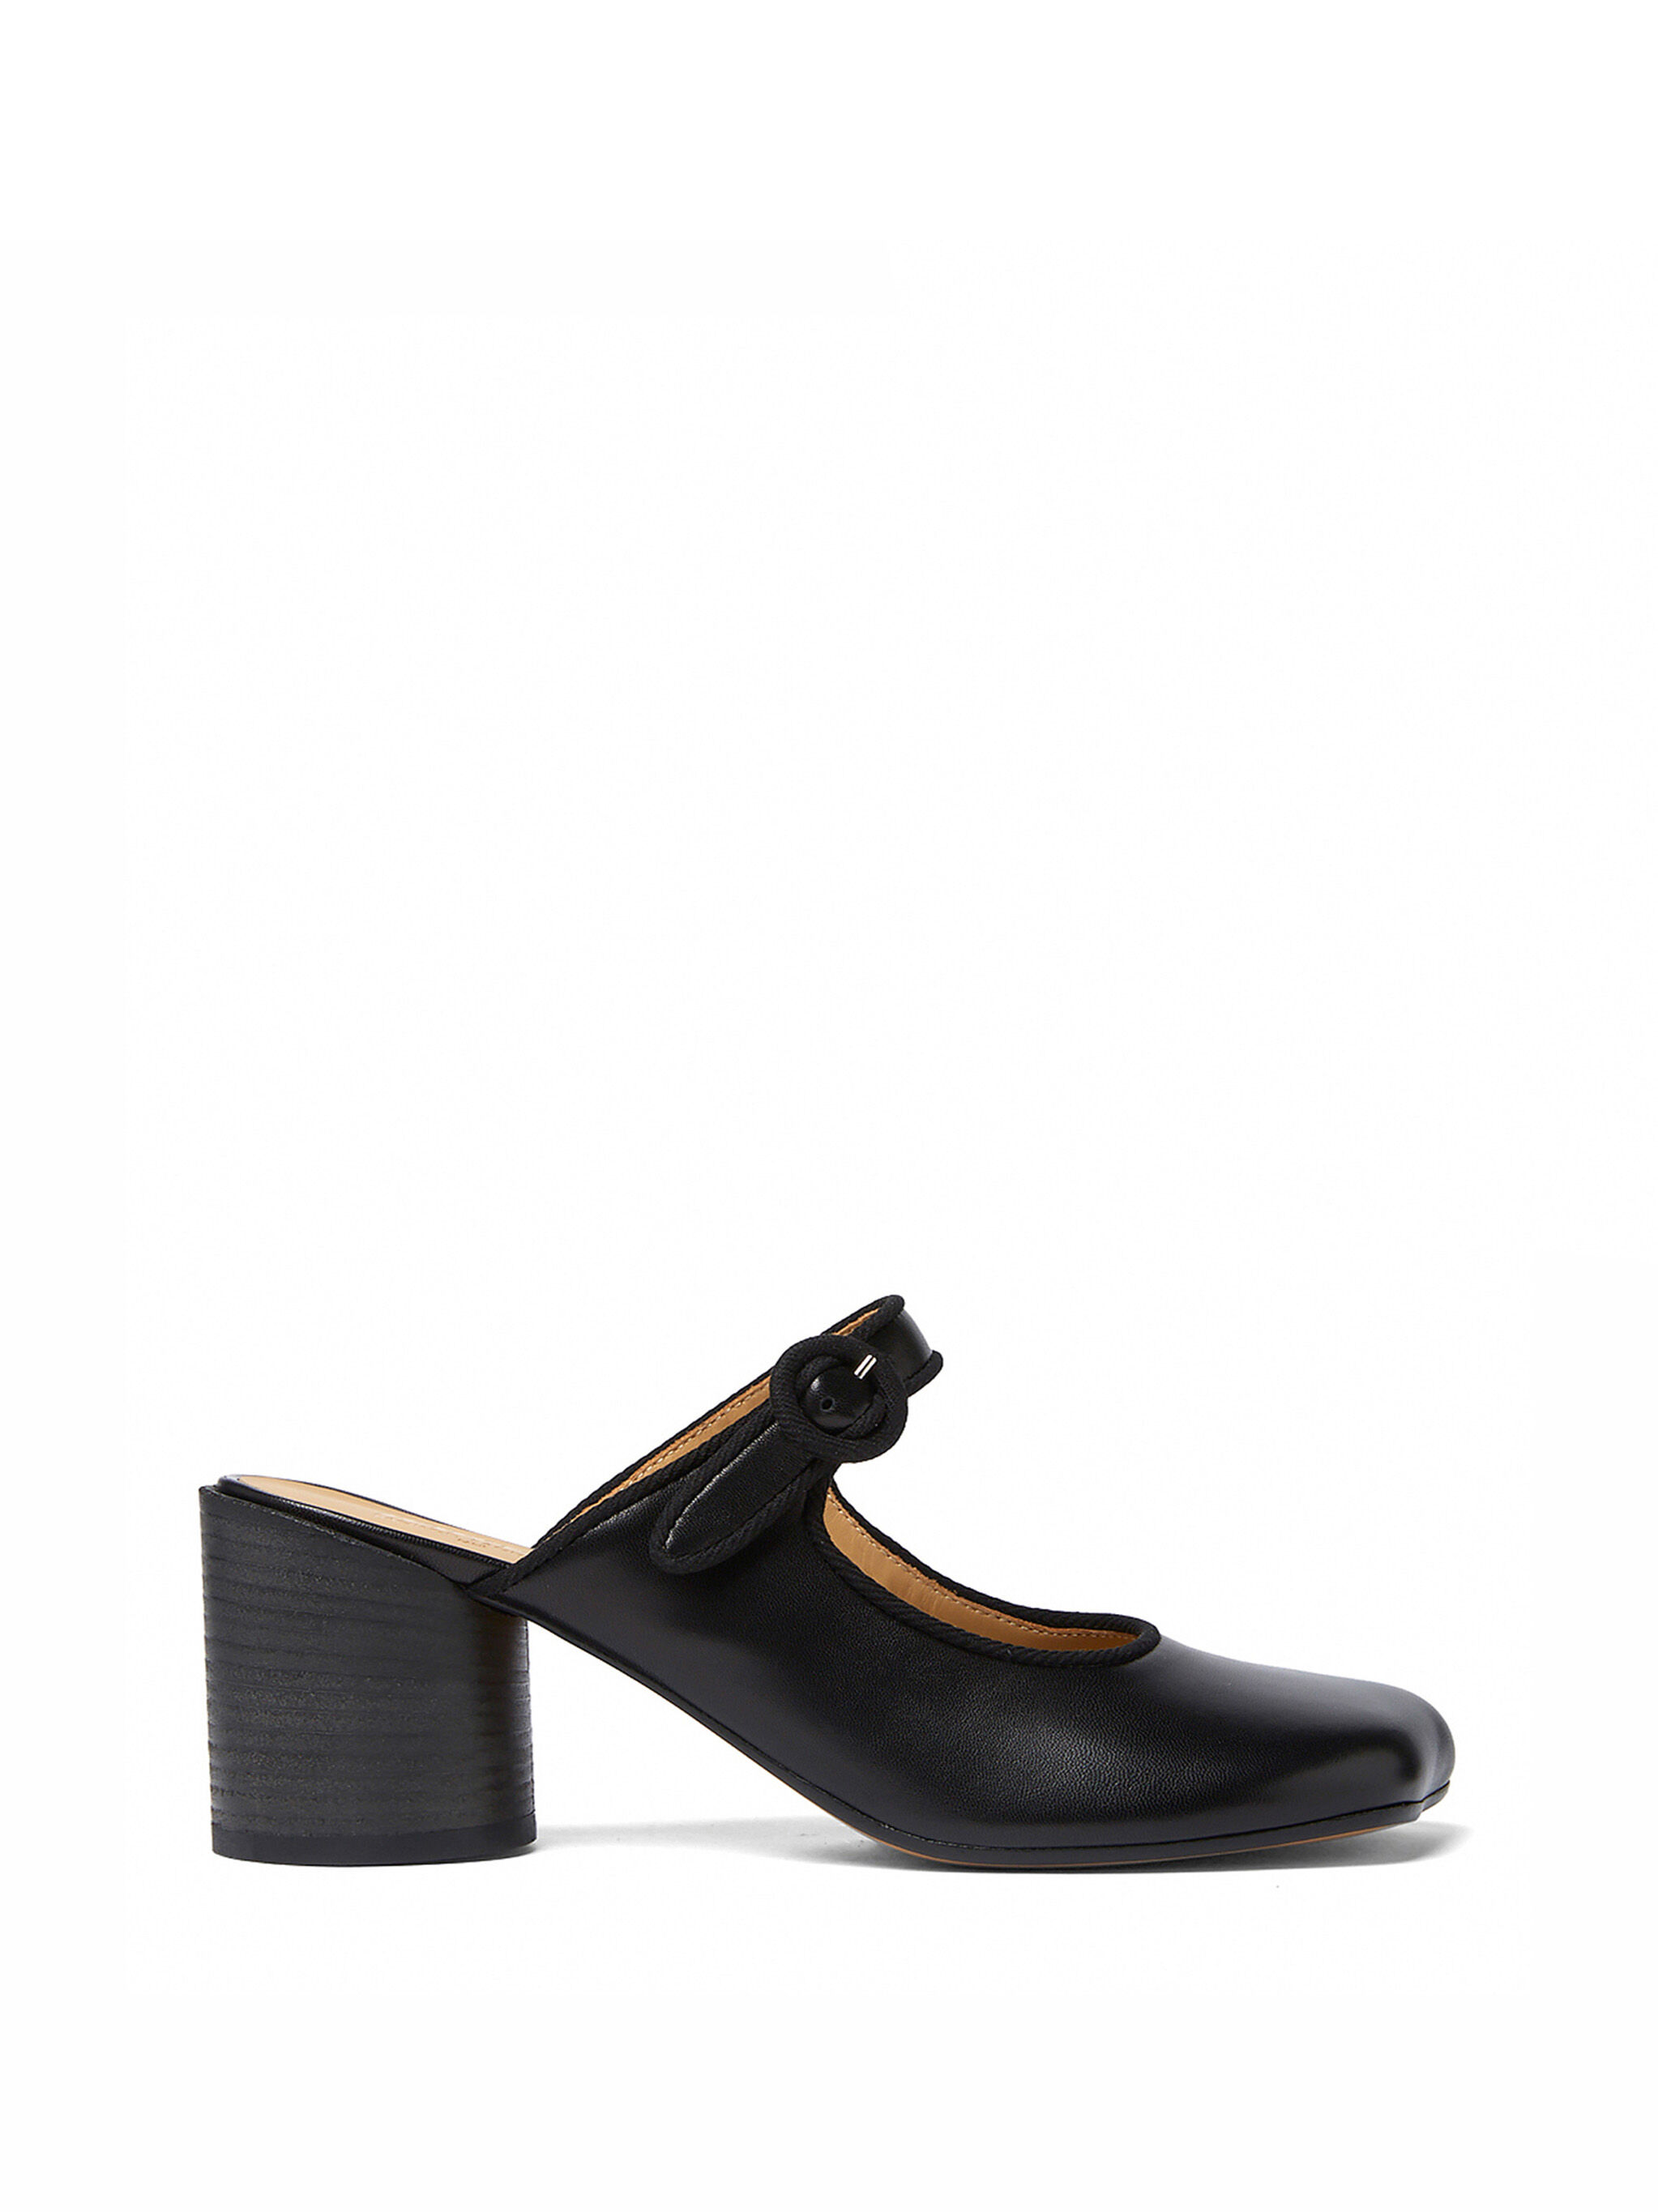 MM6 Maison Margiela Black Mary Jane Mules Shoes | THE FLAMEL®